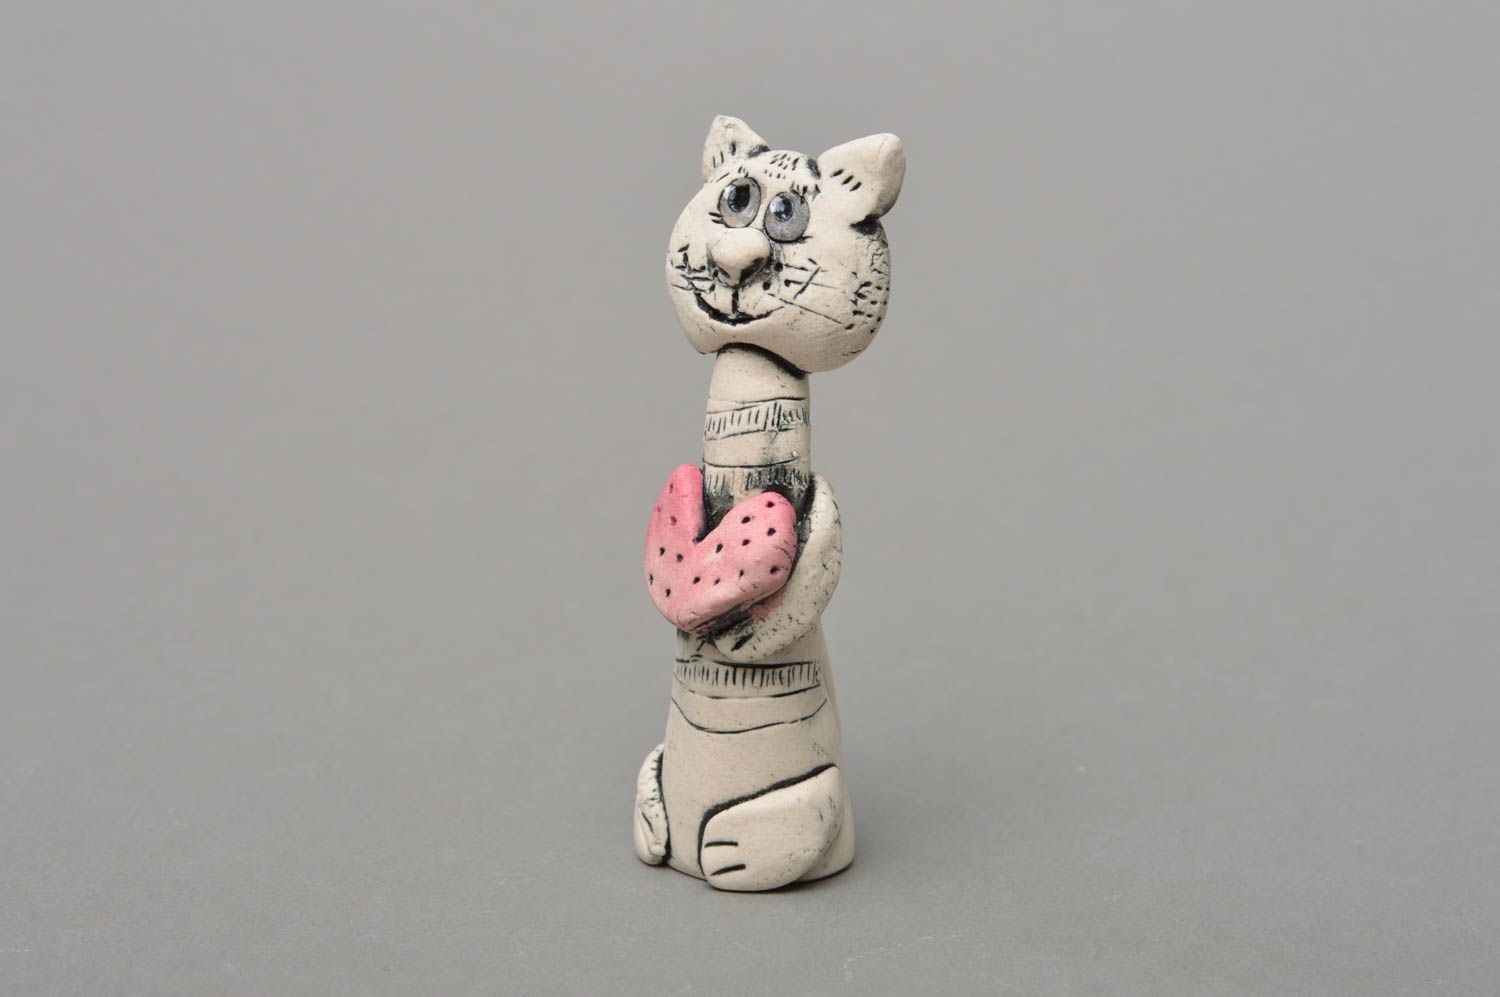 Фарфоровая статуэтка расписанная глазурью и акрилом хэнд мэйд Кот с сердцем фото 1